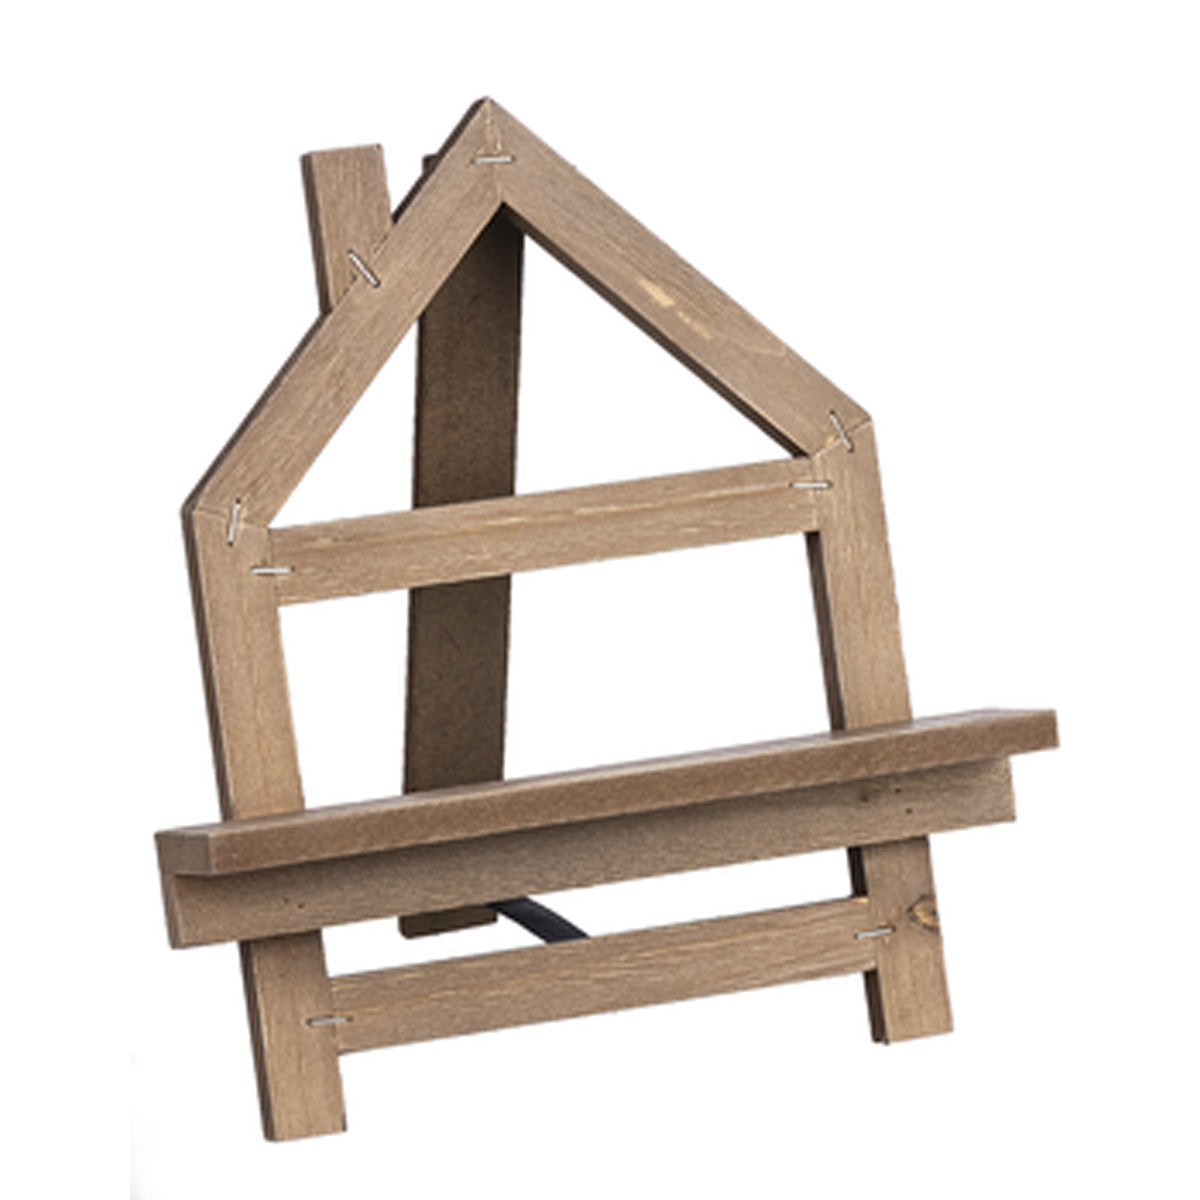 Folding House-shaped Easel